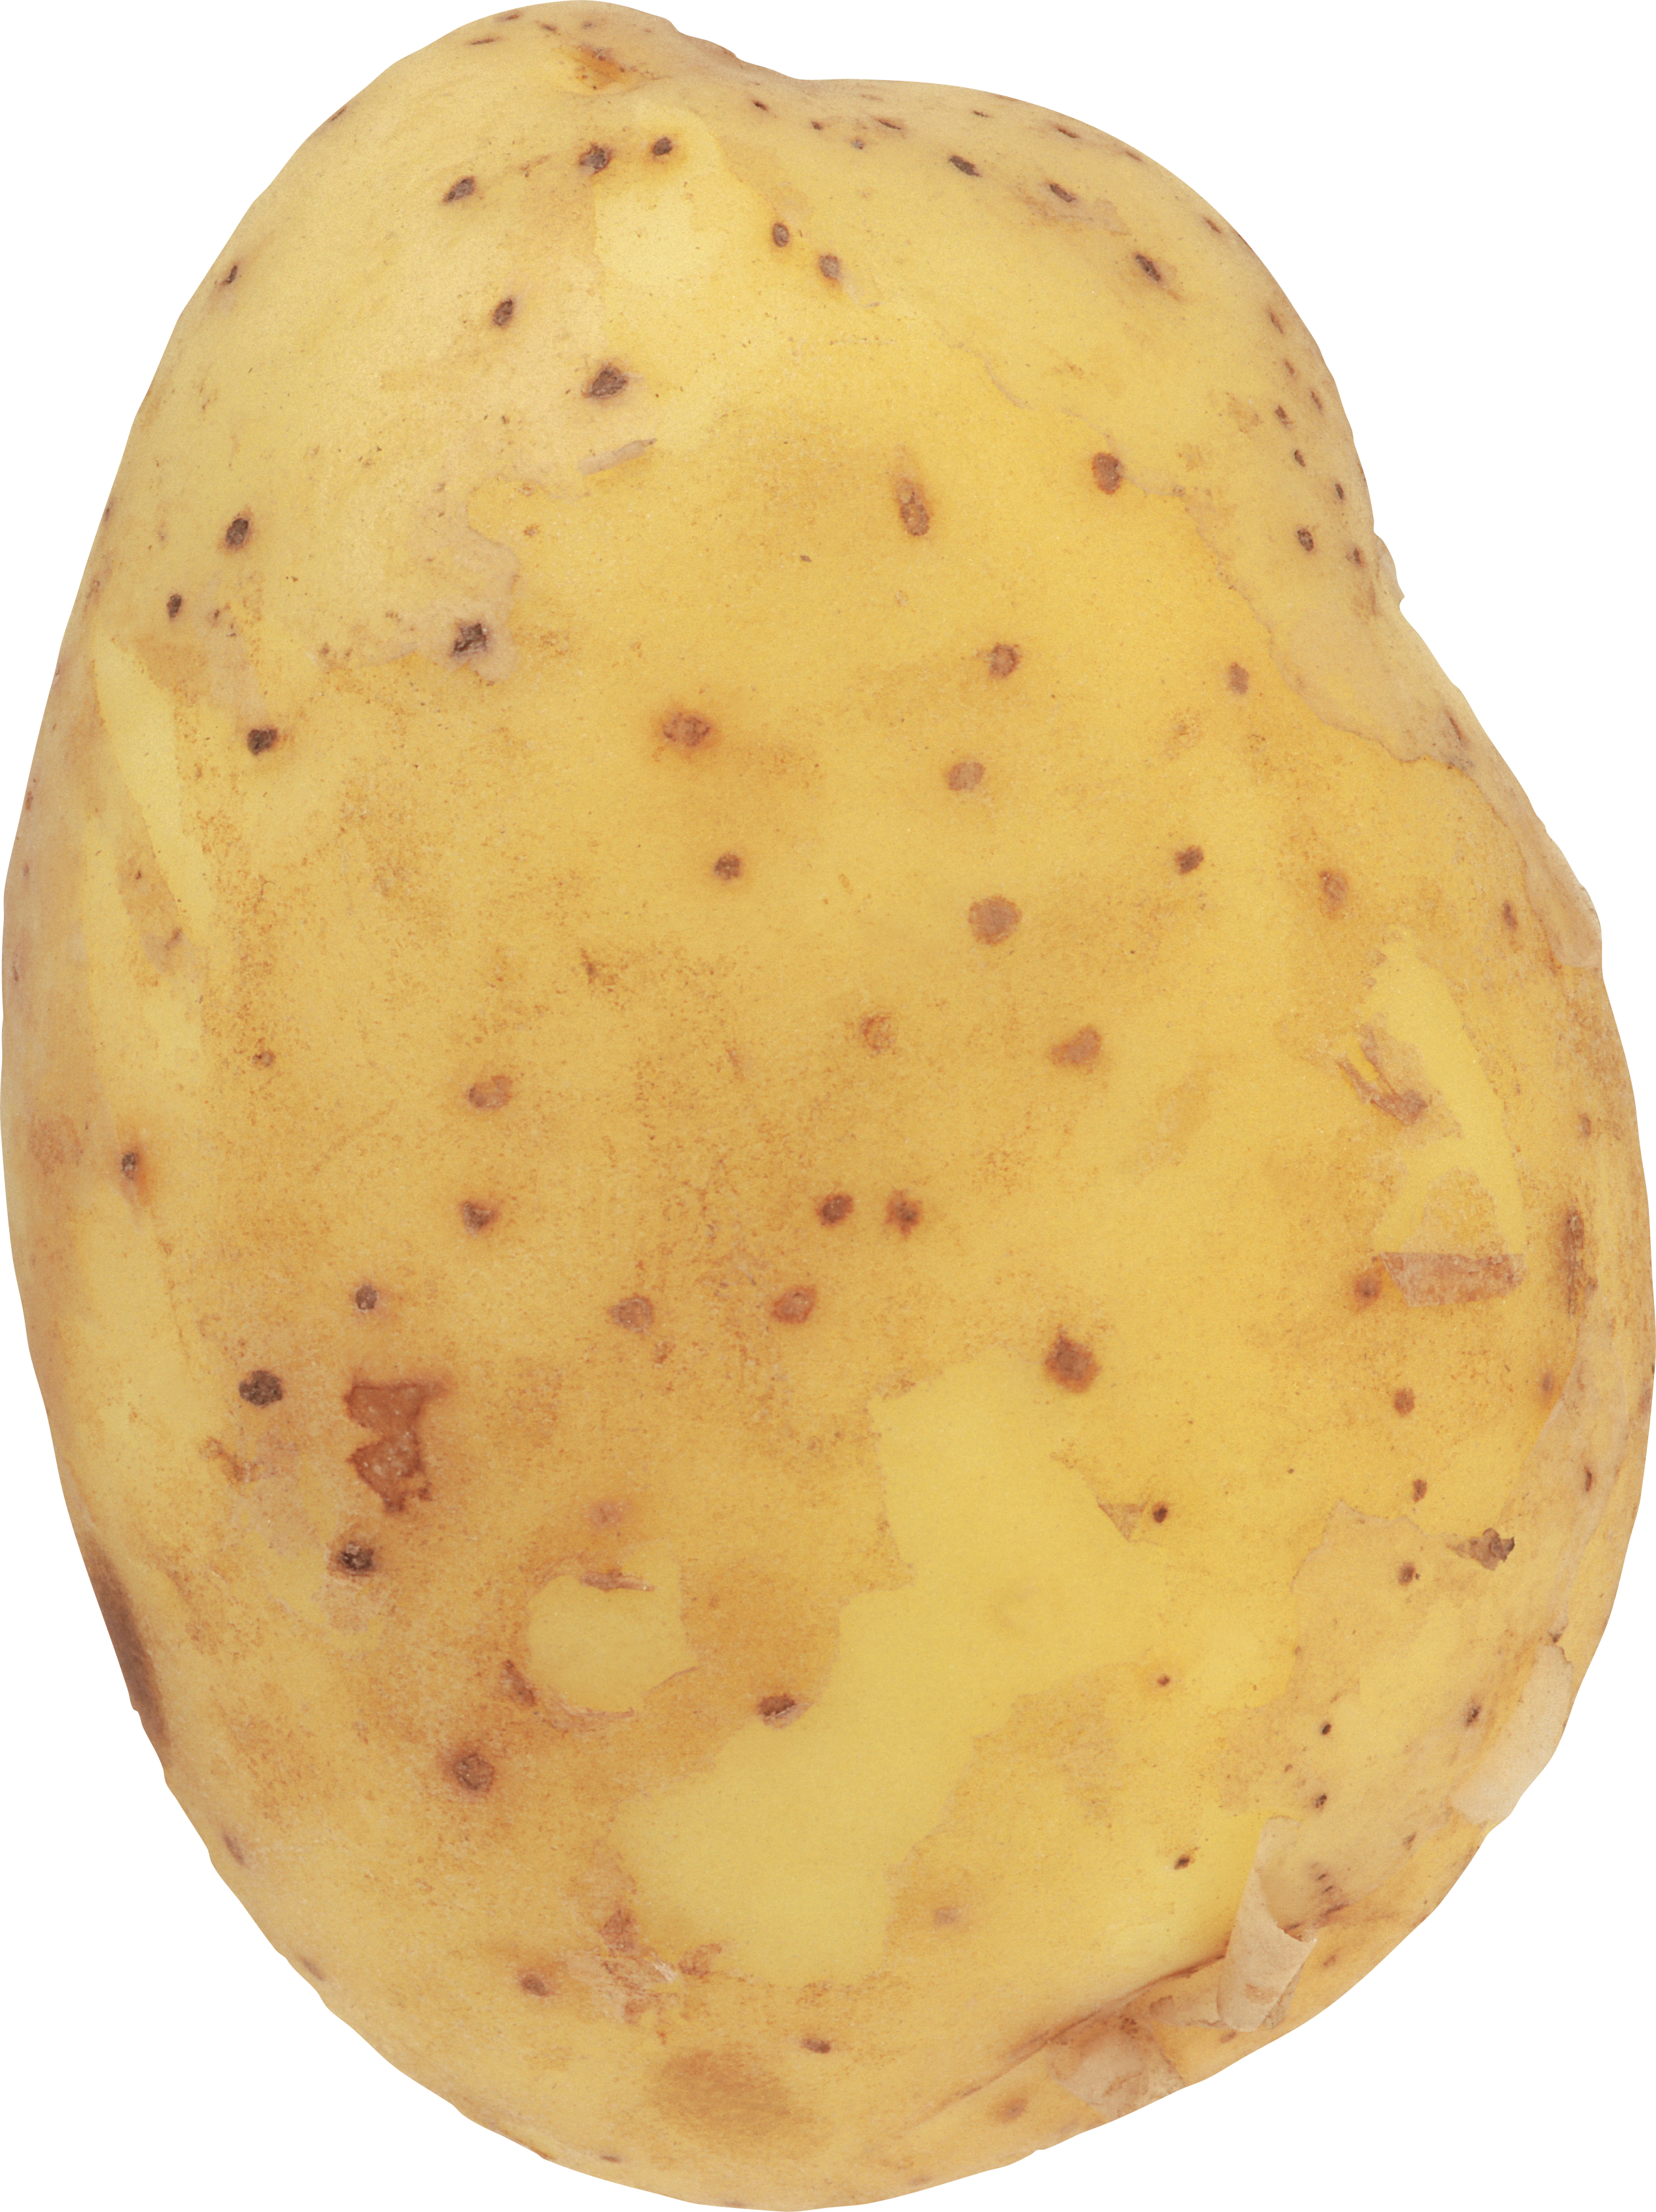 Potato HD PNG - 91658